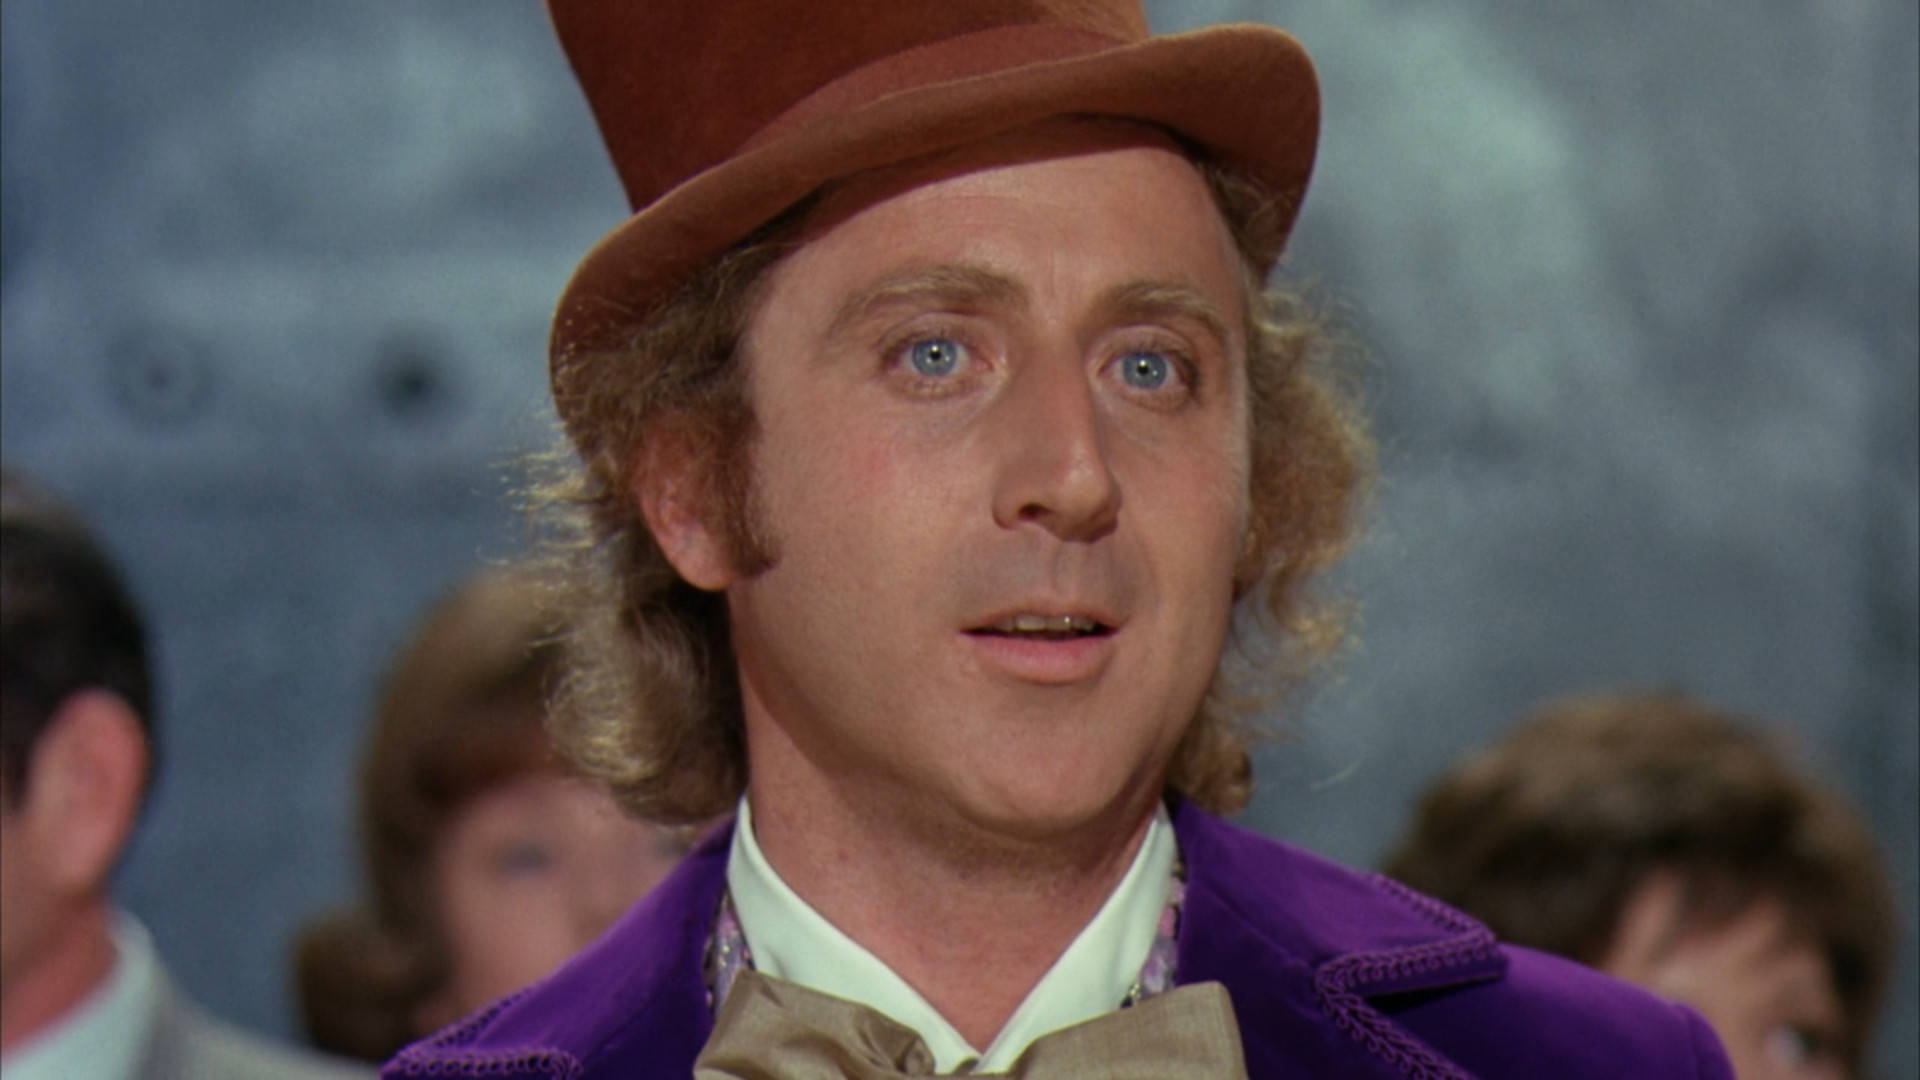 Genewilder Willy Wonka Y La Fábrica De Chocolate Película De Fantasía Musical Fondo de pantalla